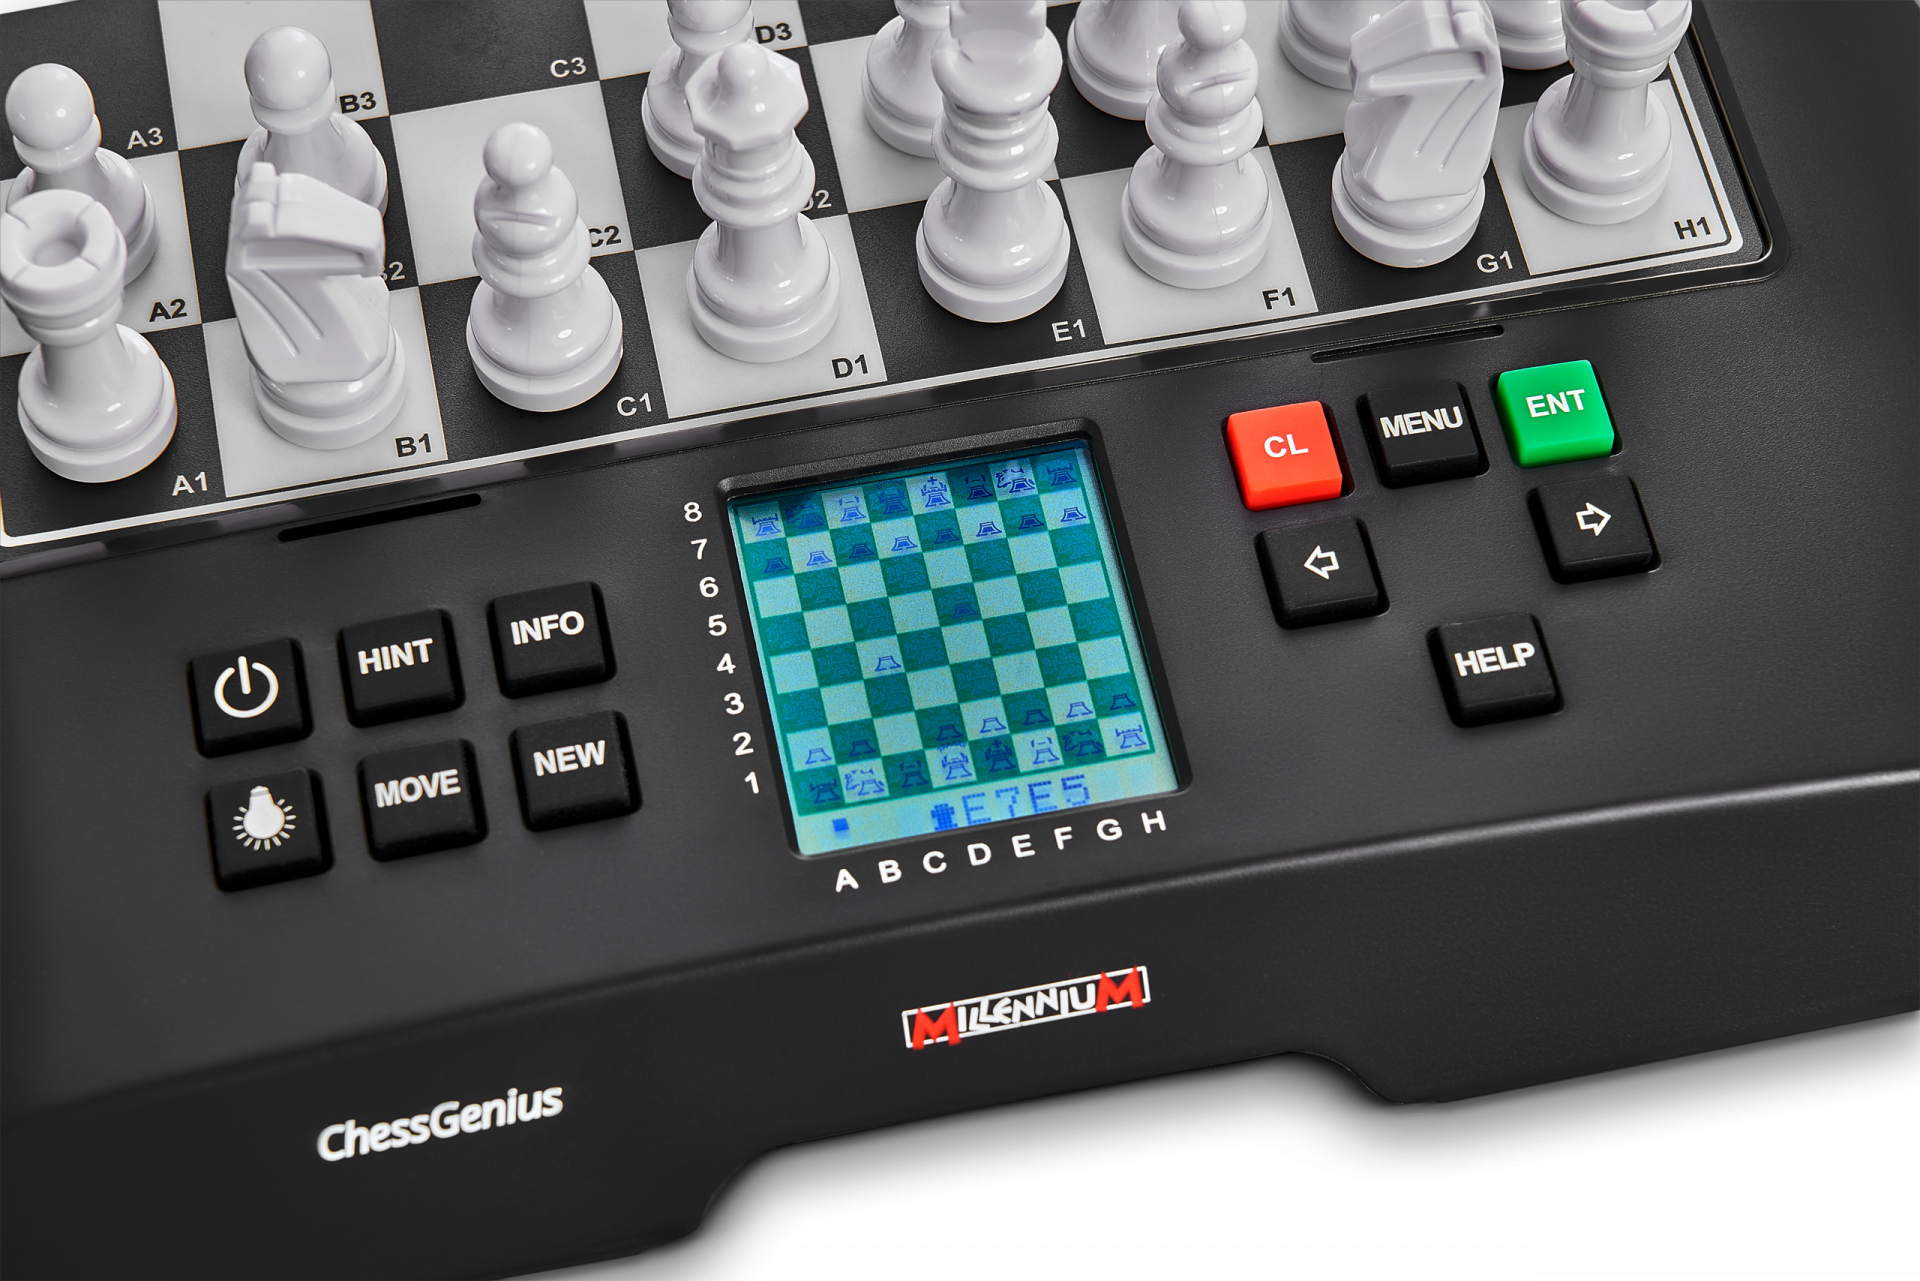 Millennium ChessGenius chess computer